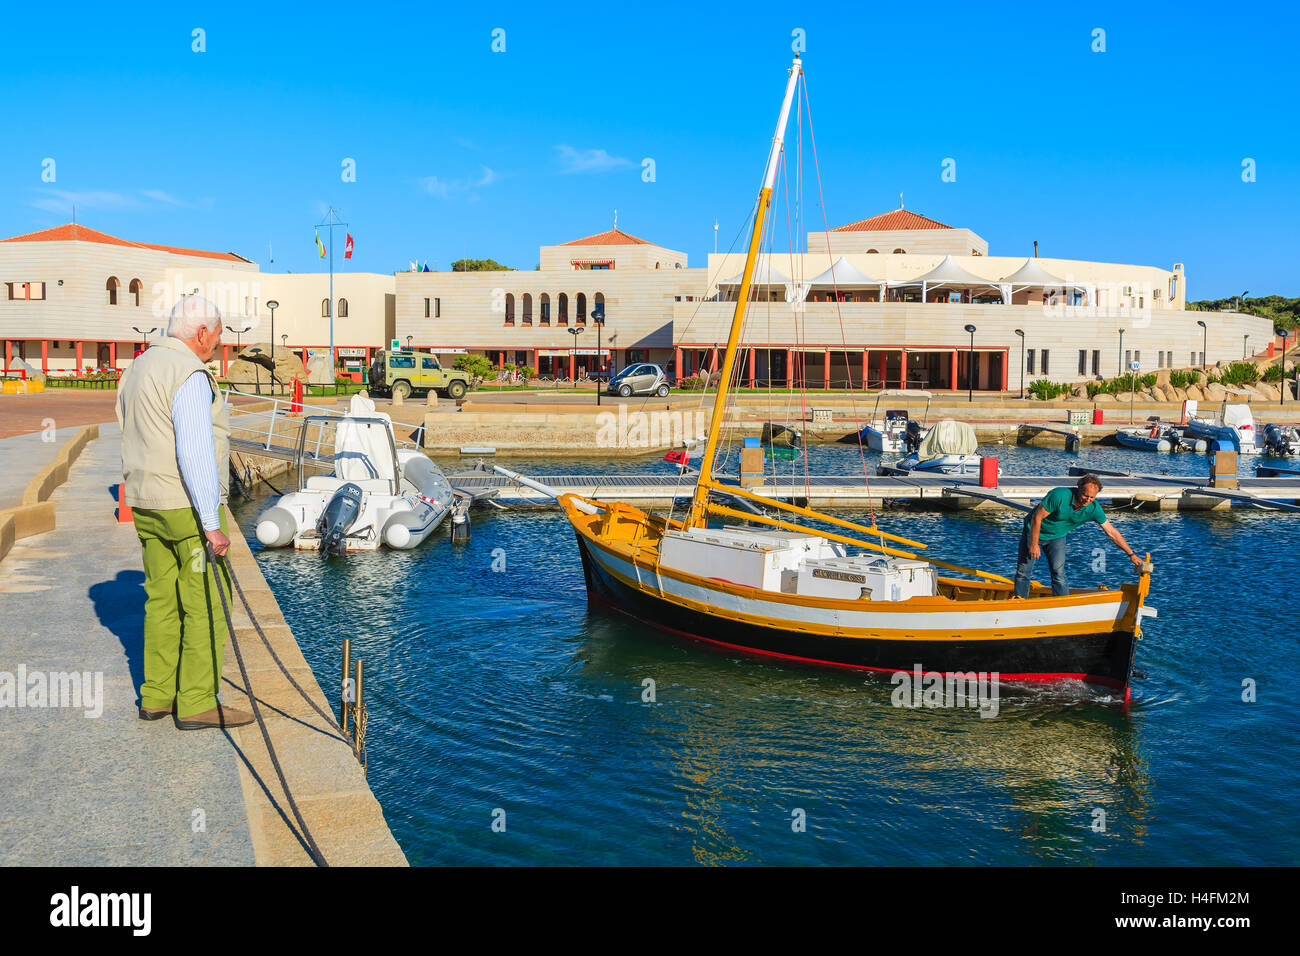 Der Hafen PORTO GIUNCO, Sardinien - 27. Mai 2014: Fischerboot kehrt vom offenen Meer zum Hafen von Porto Giunco. Viele Fischer hier Boote ankern und verkaufen frischen Fisch zu den Restaurants am Hafen. Stockfoto